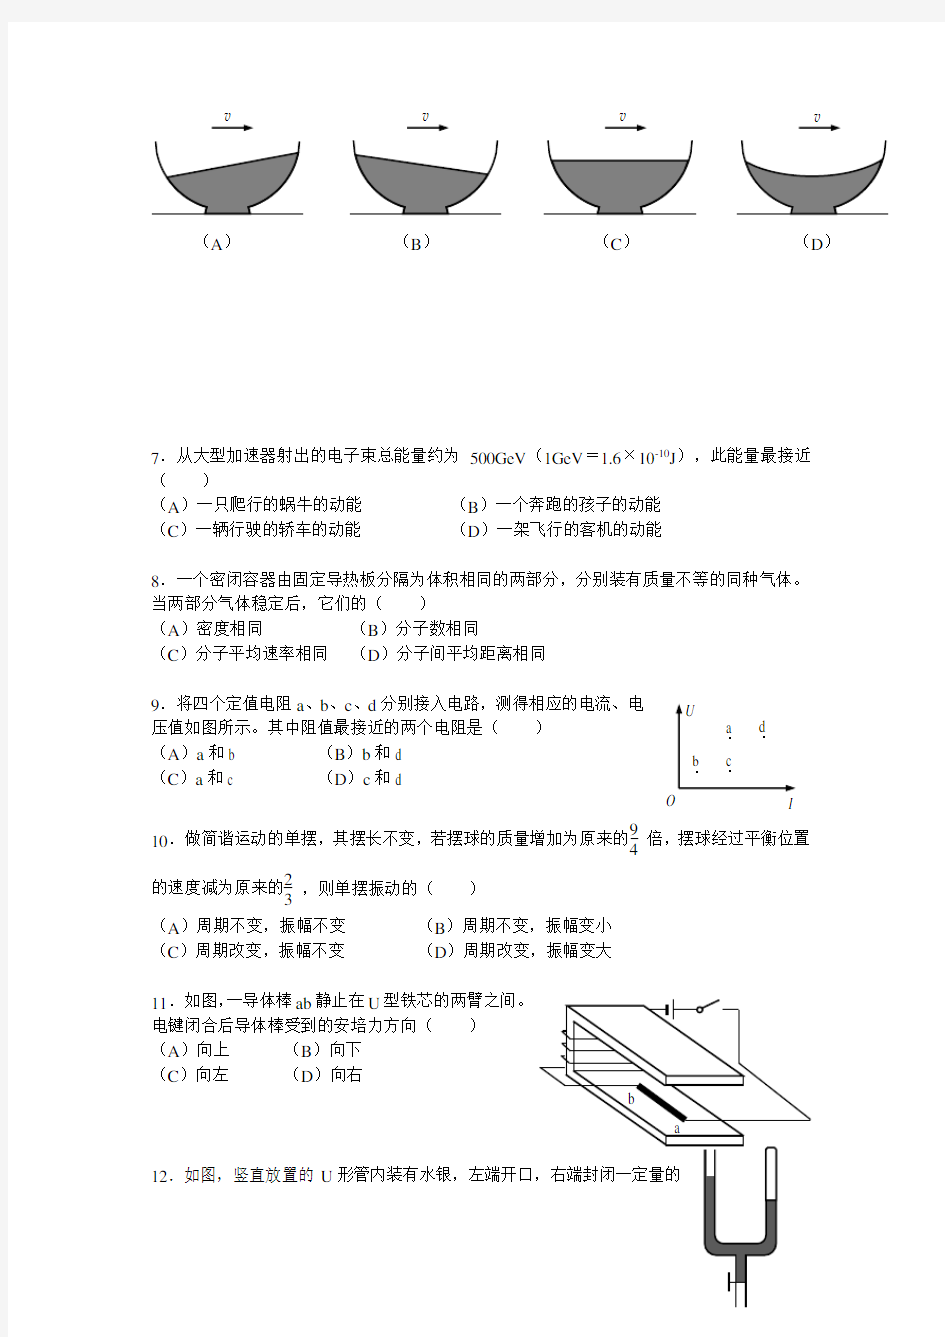 2017年上海市学业水平等级性考试(物理)